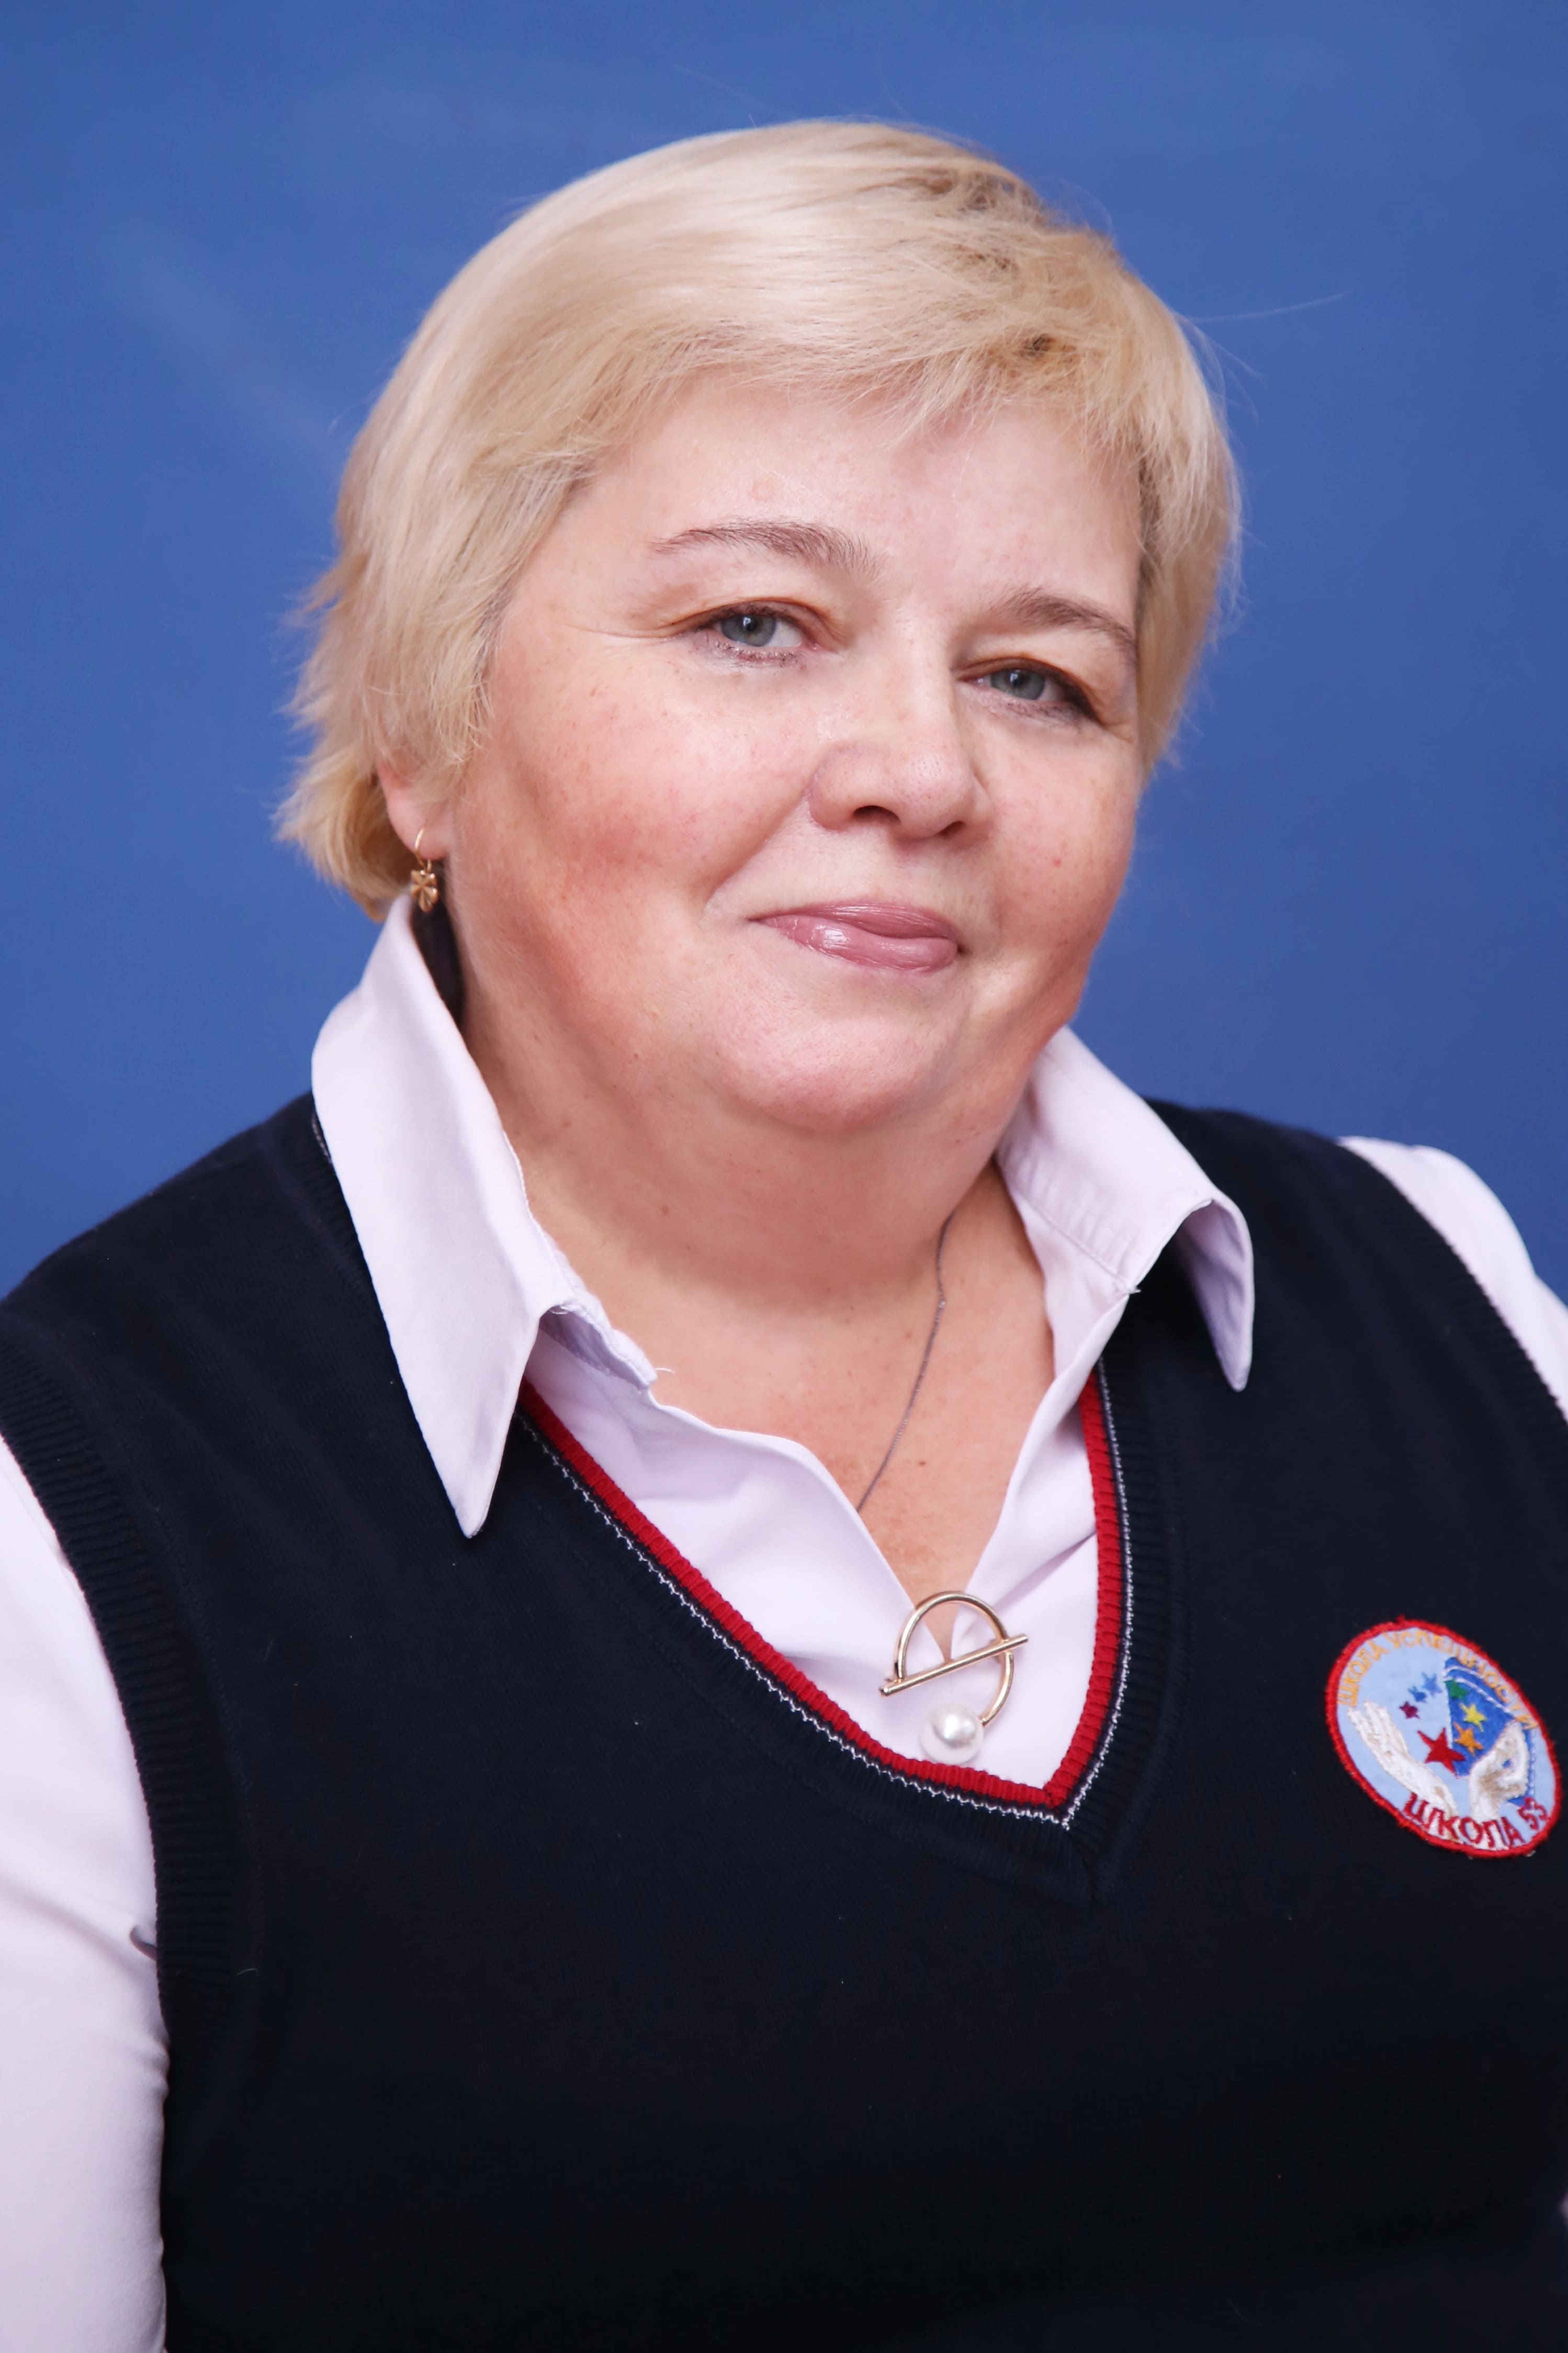 Иванова Ольга Владимировна.